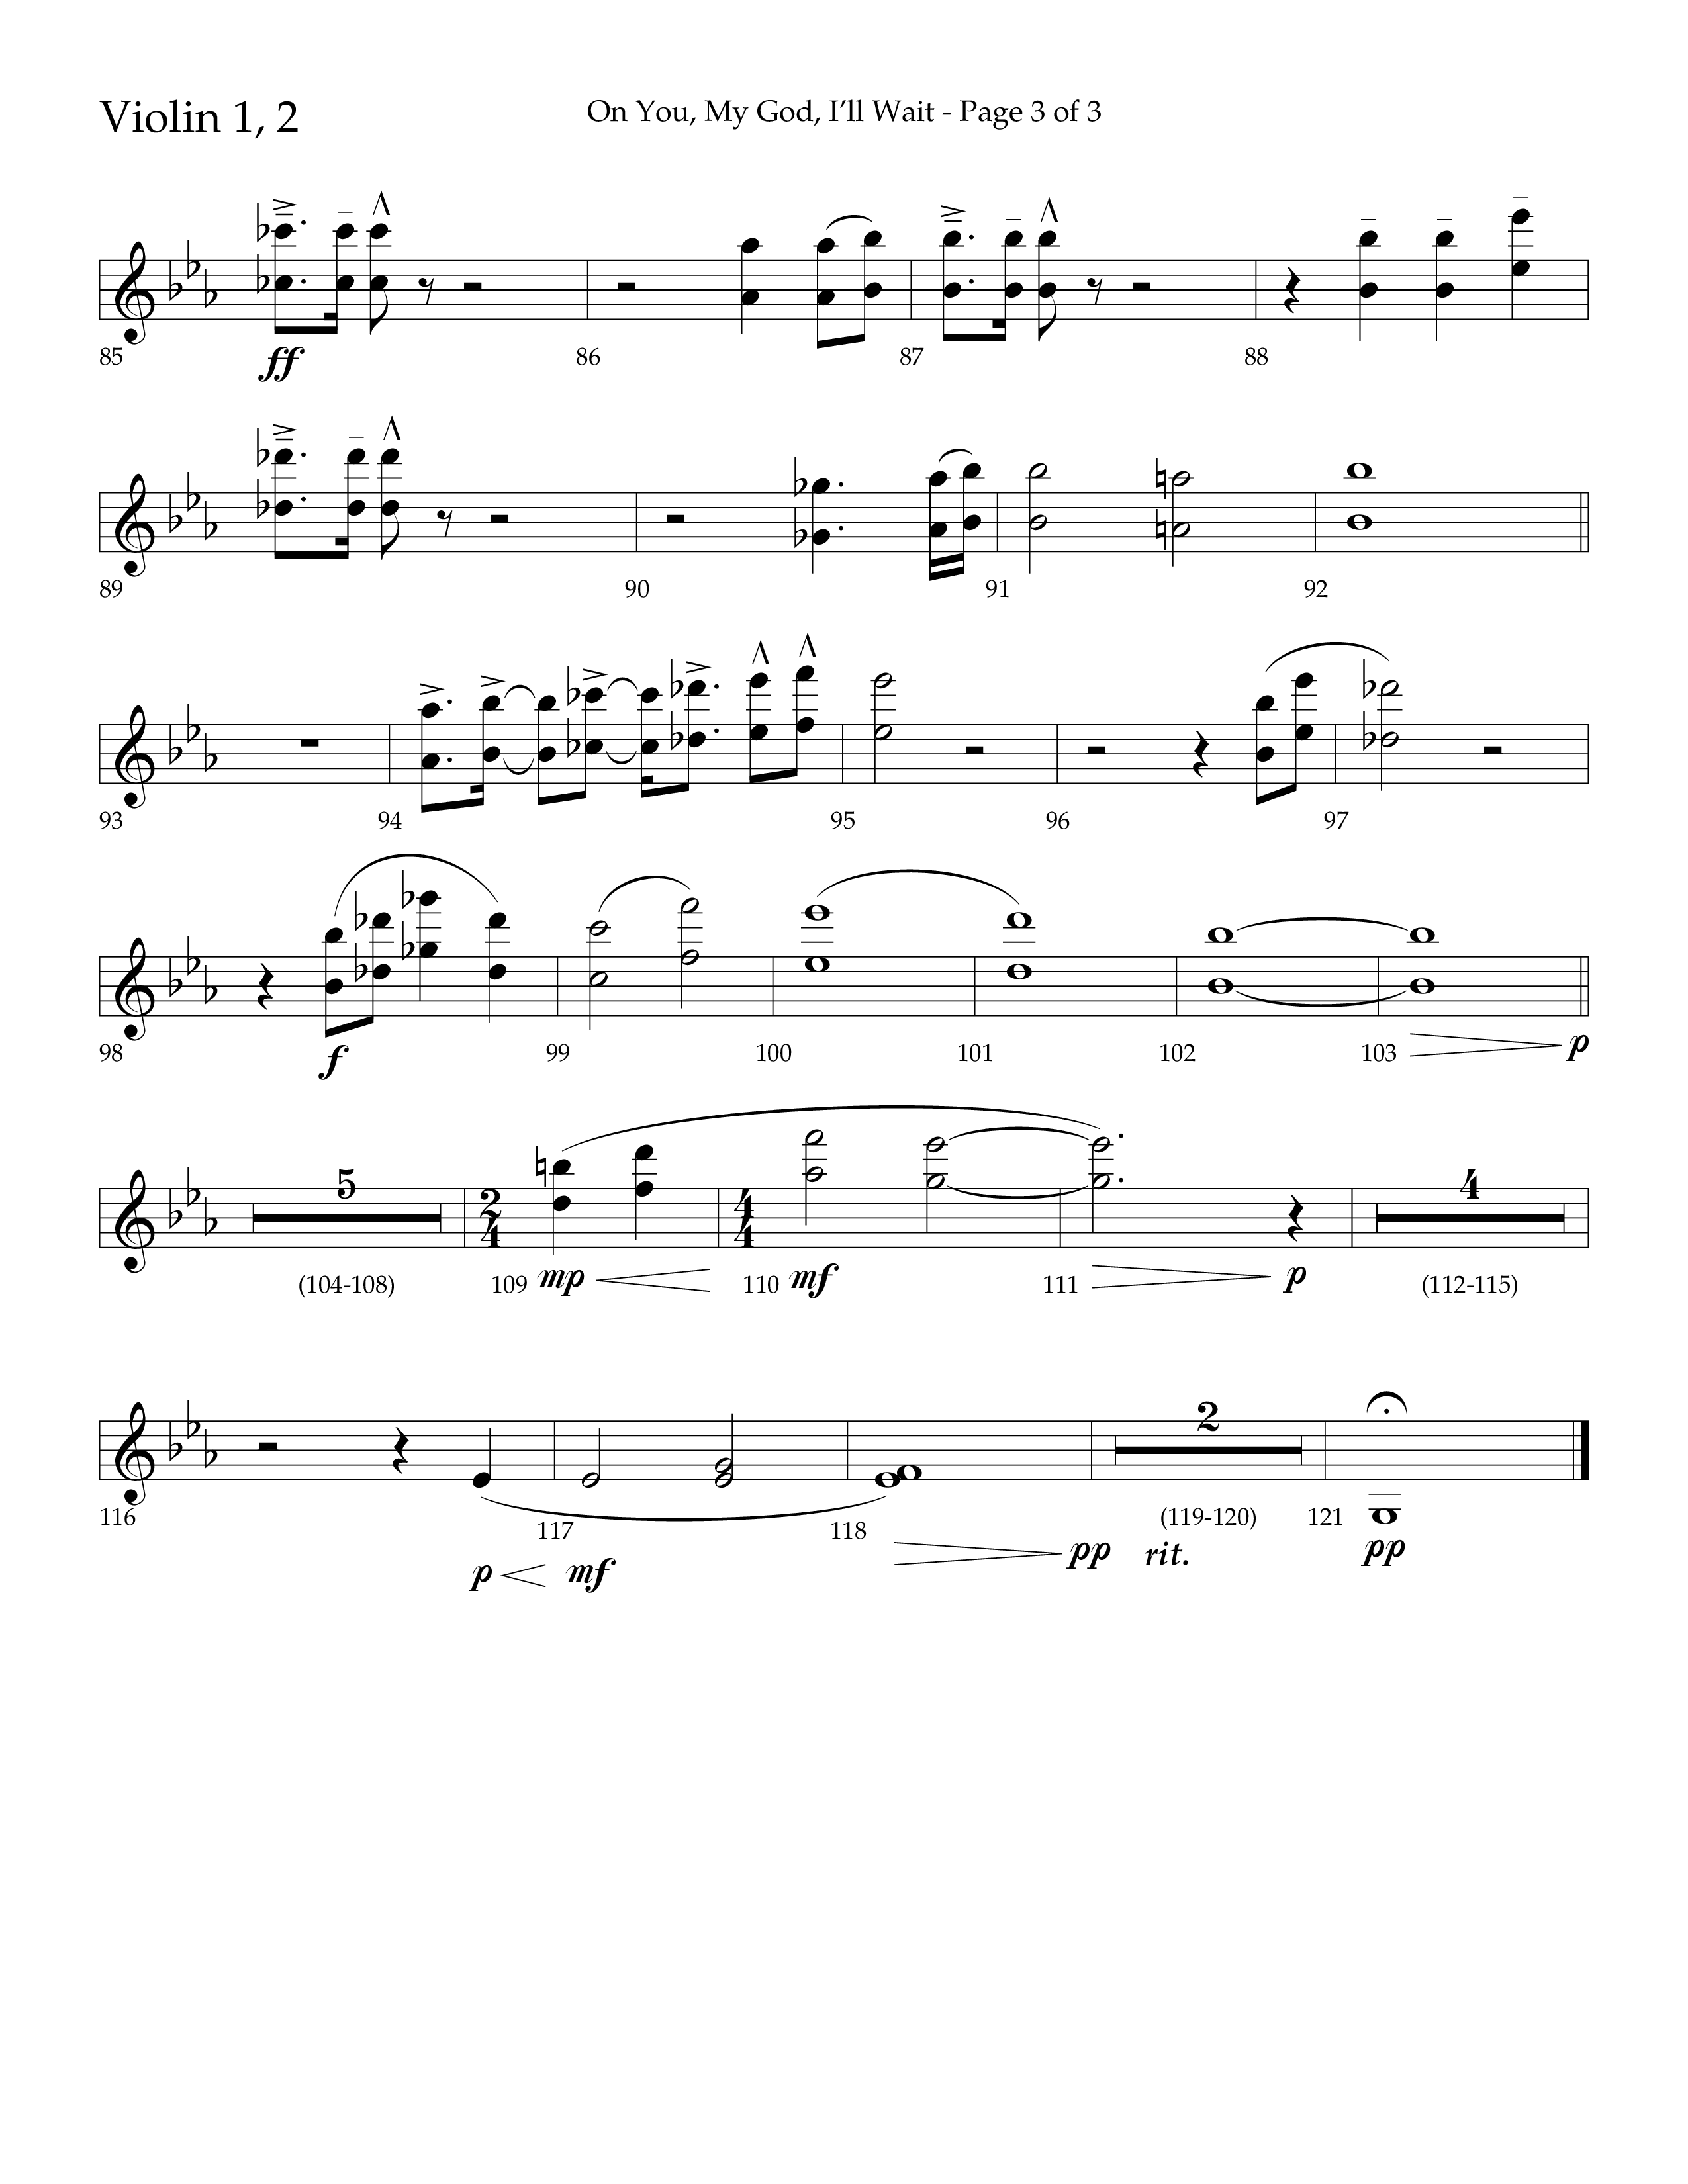 On You My God I'll Wait (Choral Anthem SATB) Violin 1/2 (Lifeway Choral / Arr. Craig Adams / Arr. Mike Harland)